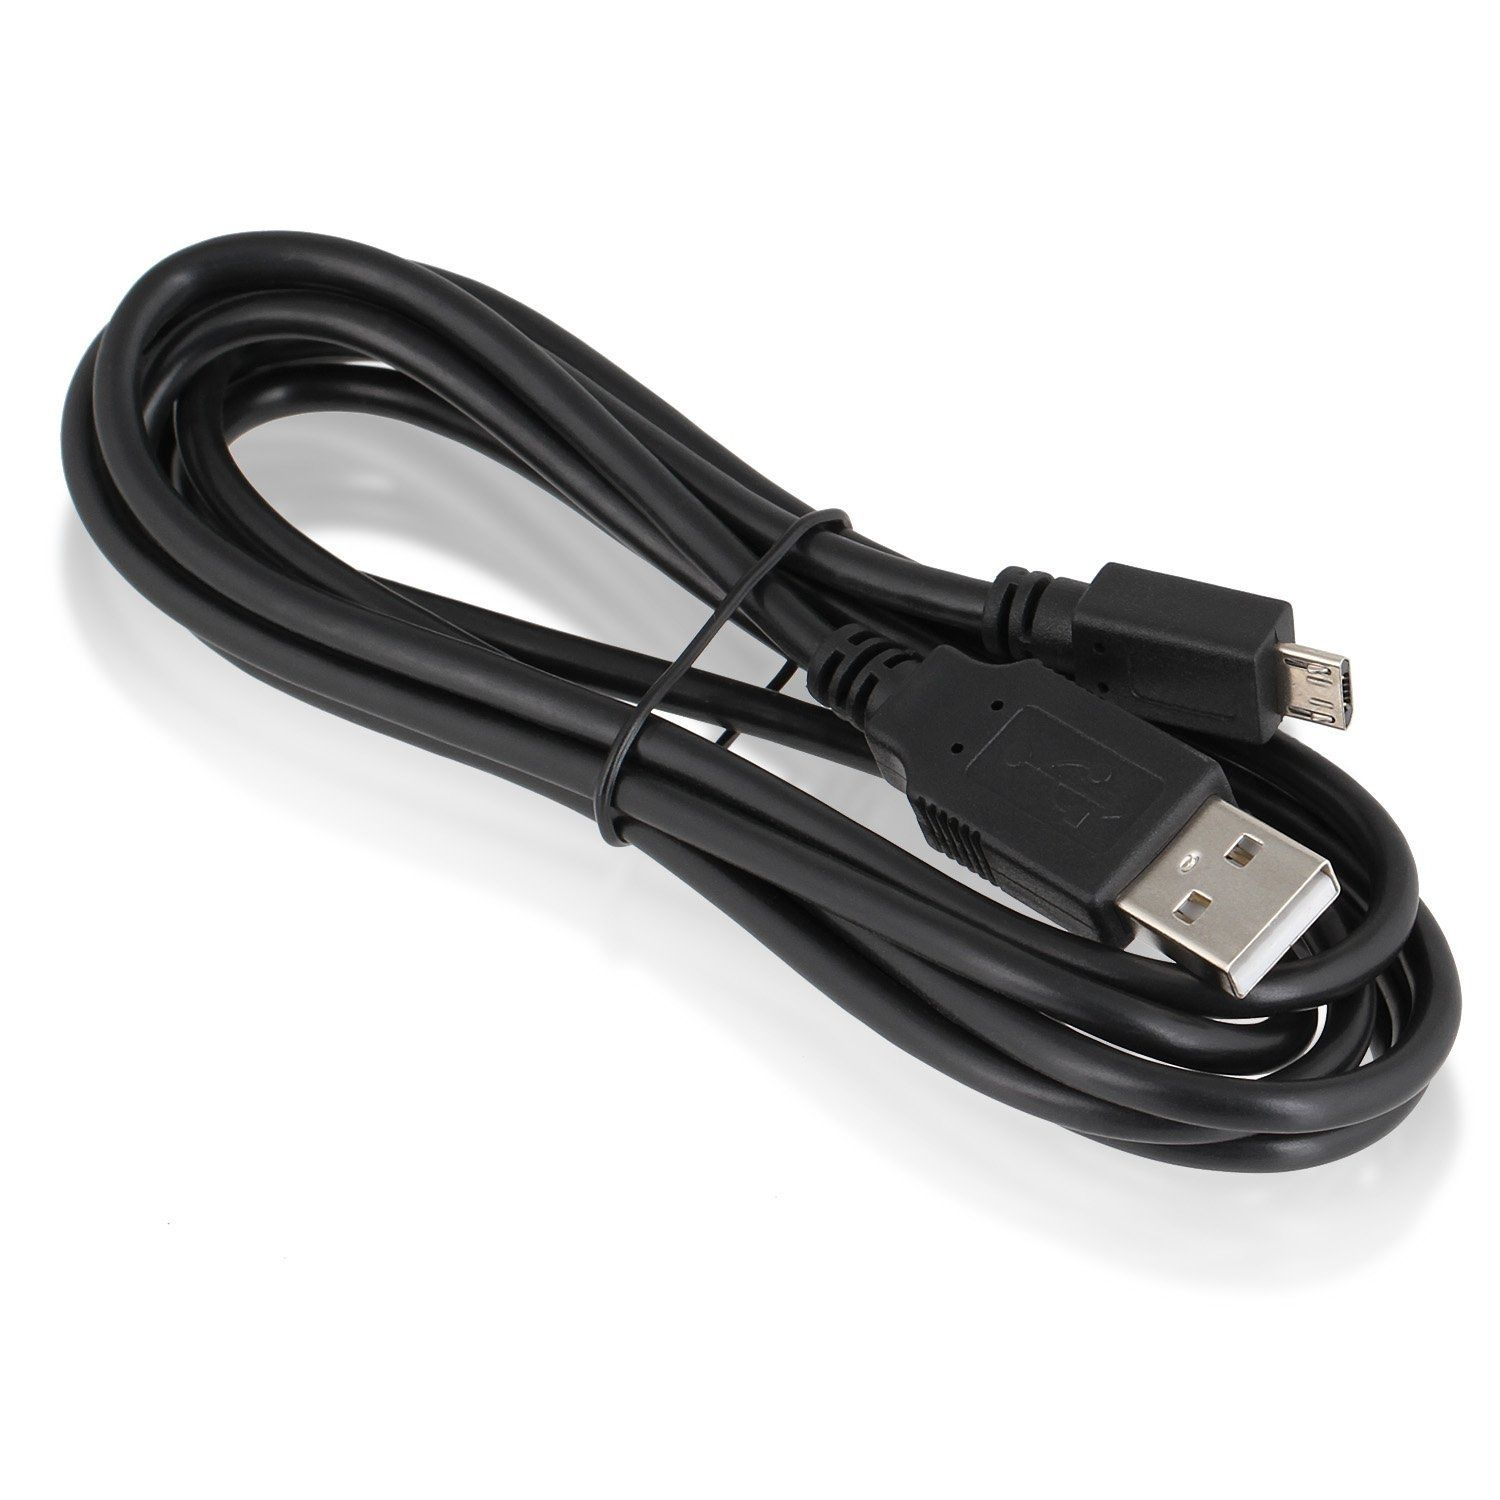 WICKED CHILI für Gamepad, Schwarz 180cm Micro DualShock PS4 4 für m, Controller Ladekabel Wireless Kabel Ladekabel, Set 2er USB 1,8 